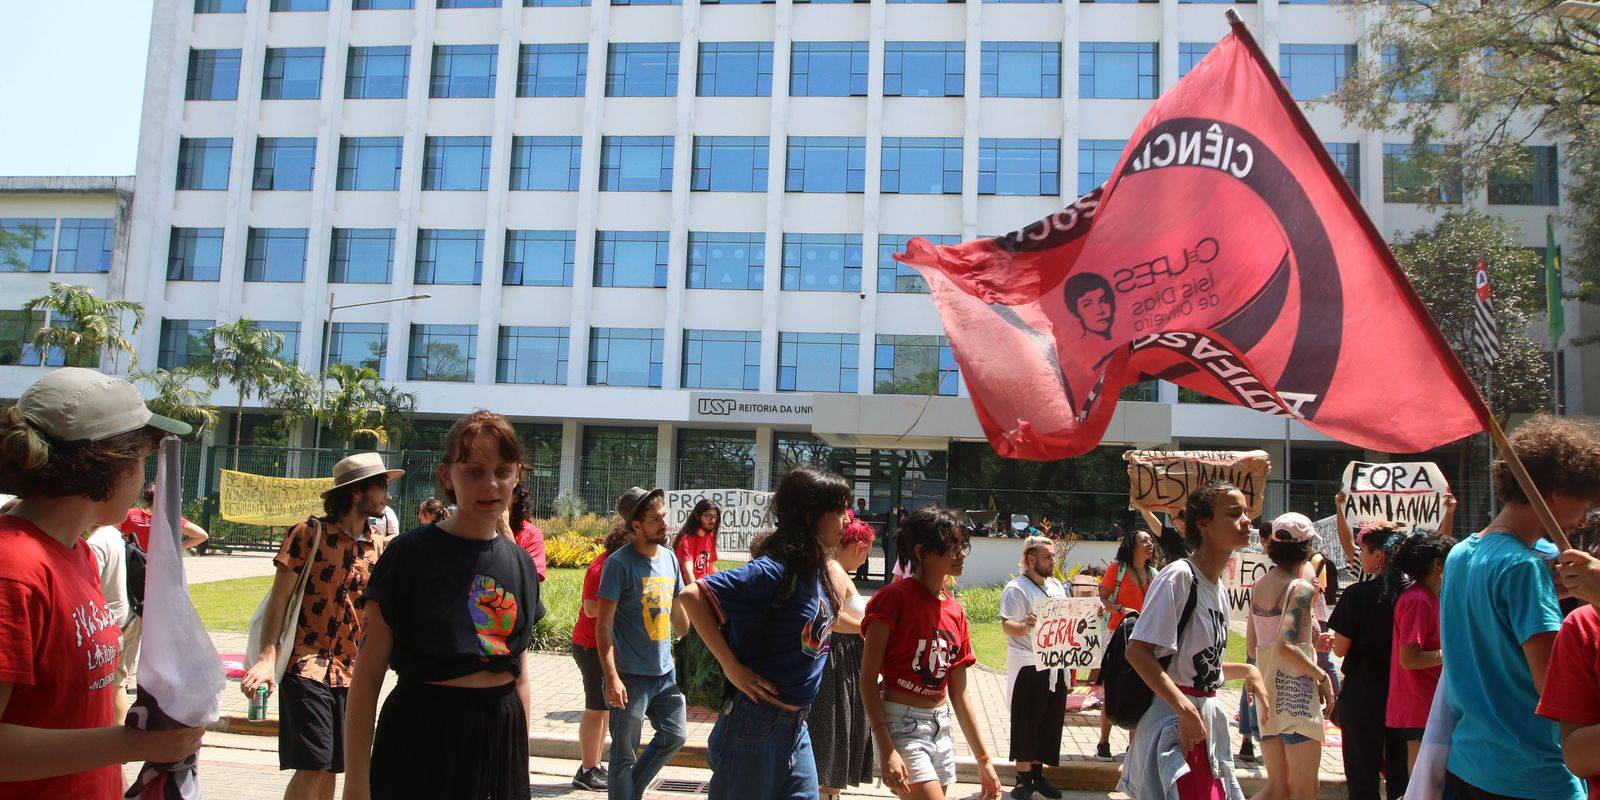 Em greve, estudantes da USP pedem mais professores e aumento de bolsa